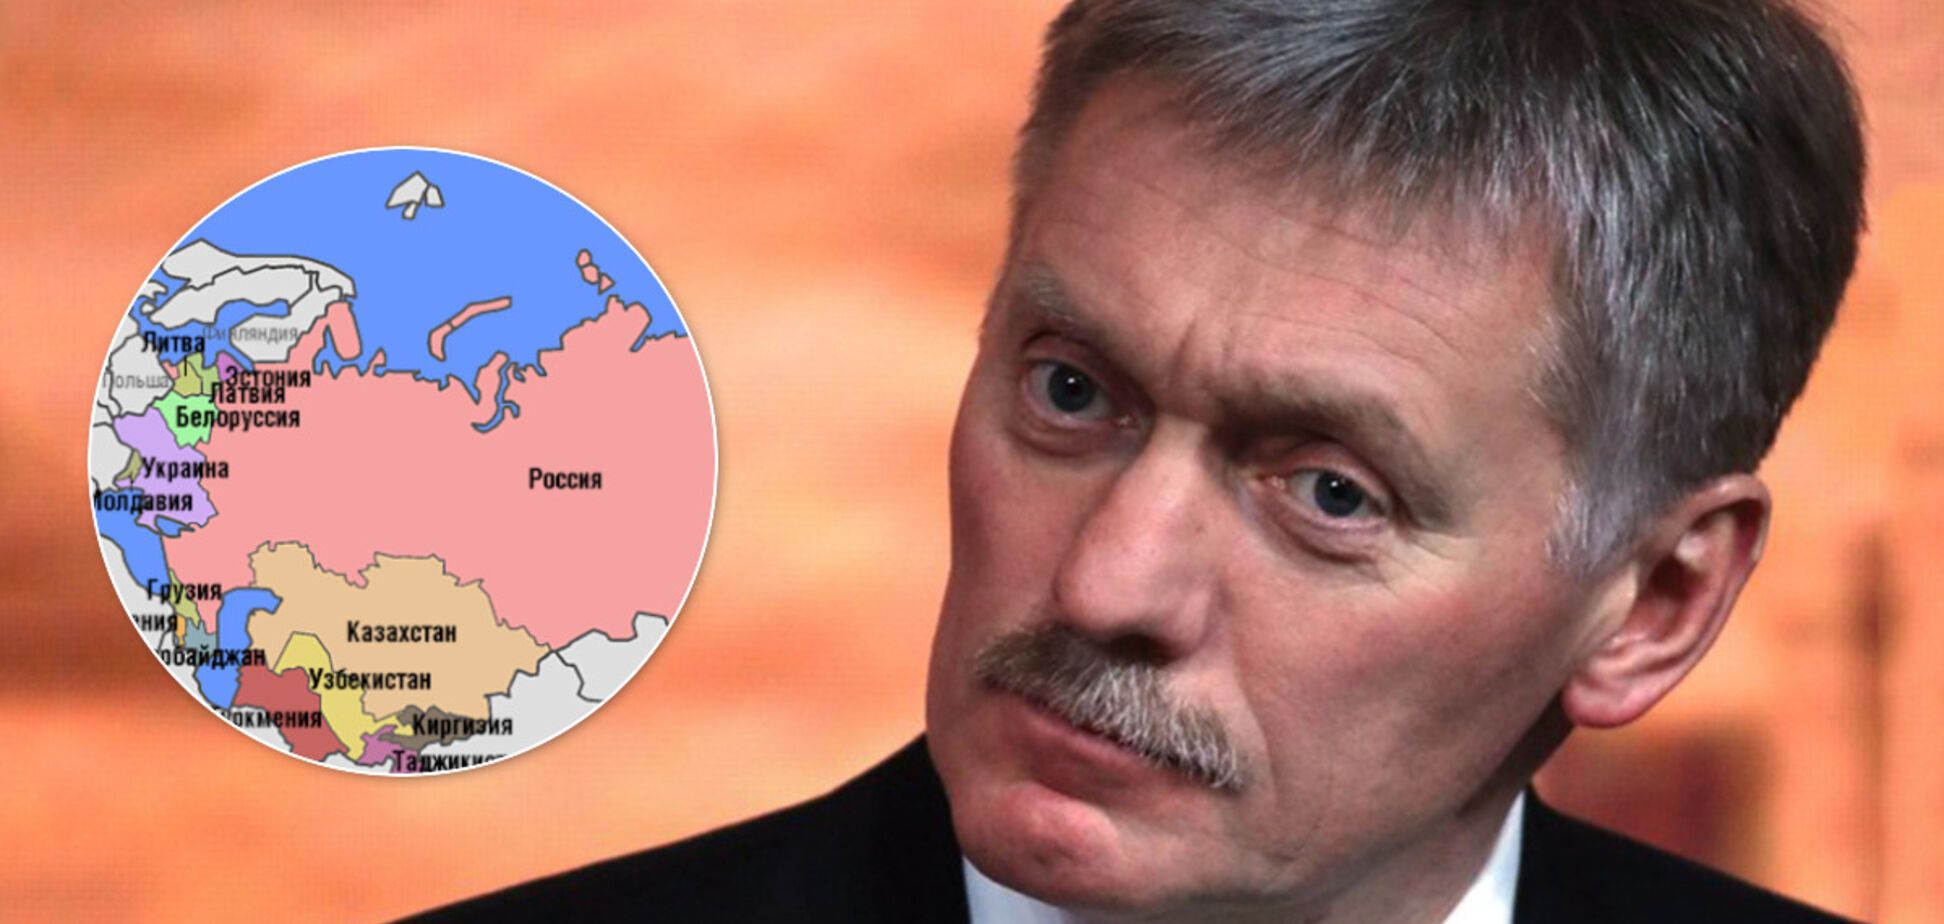 Пєсков заявив про у РФ територіальних претензій до країн-сусідів